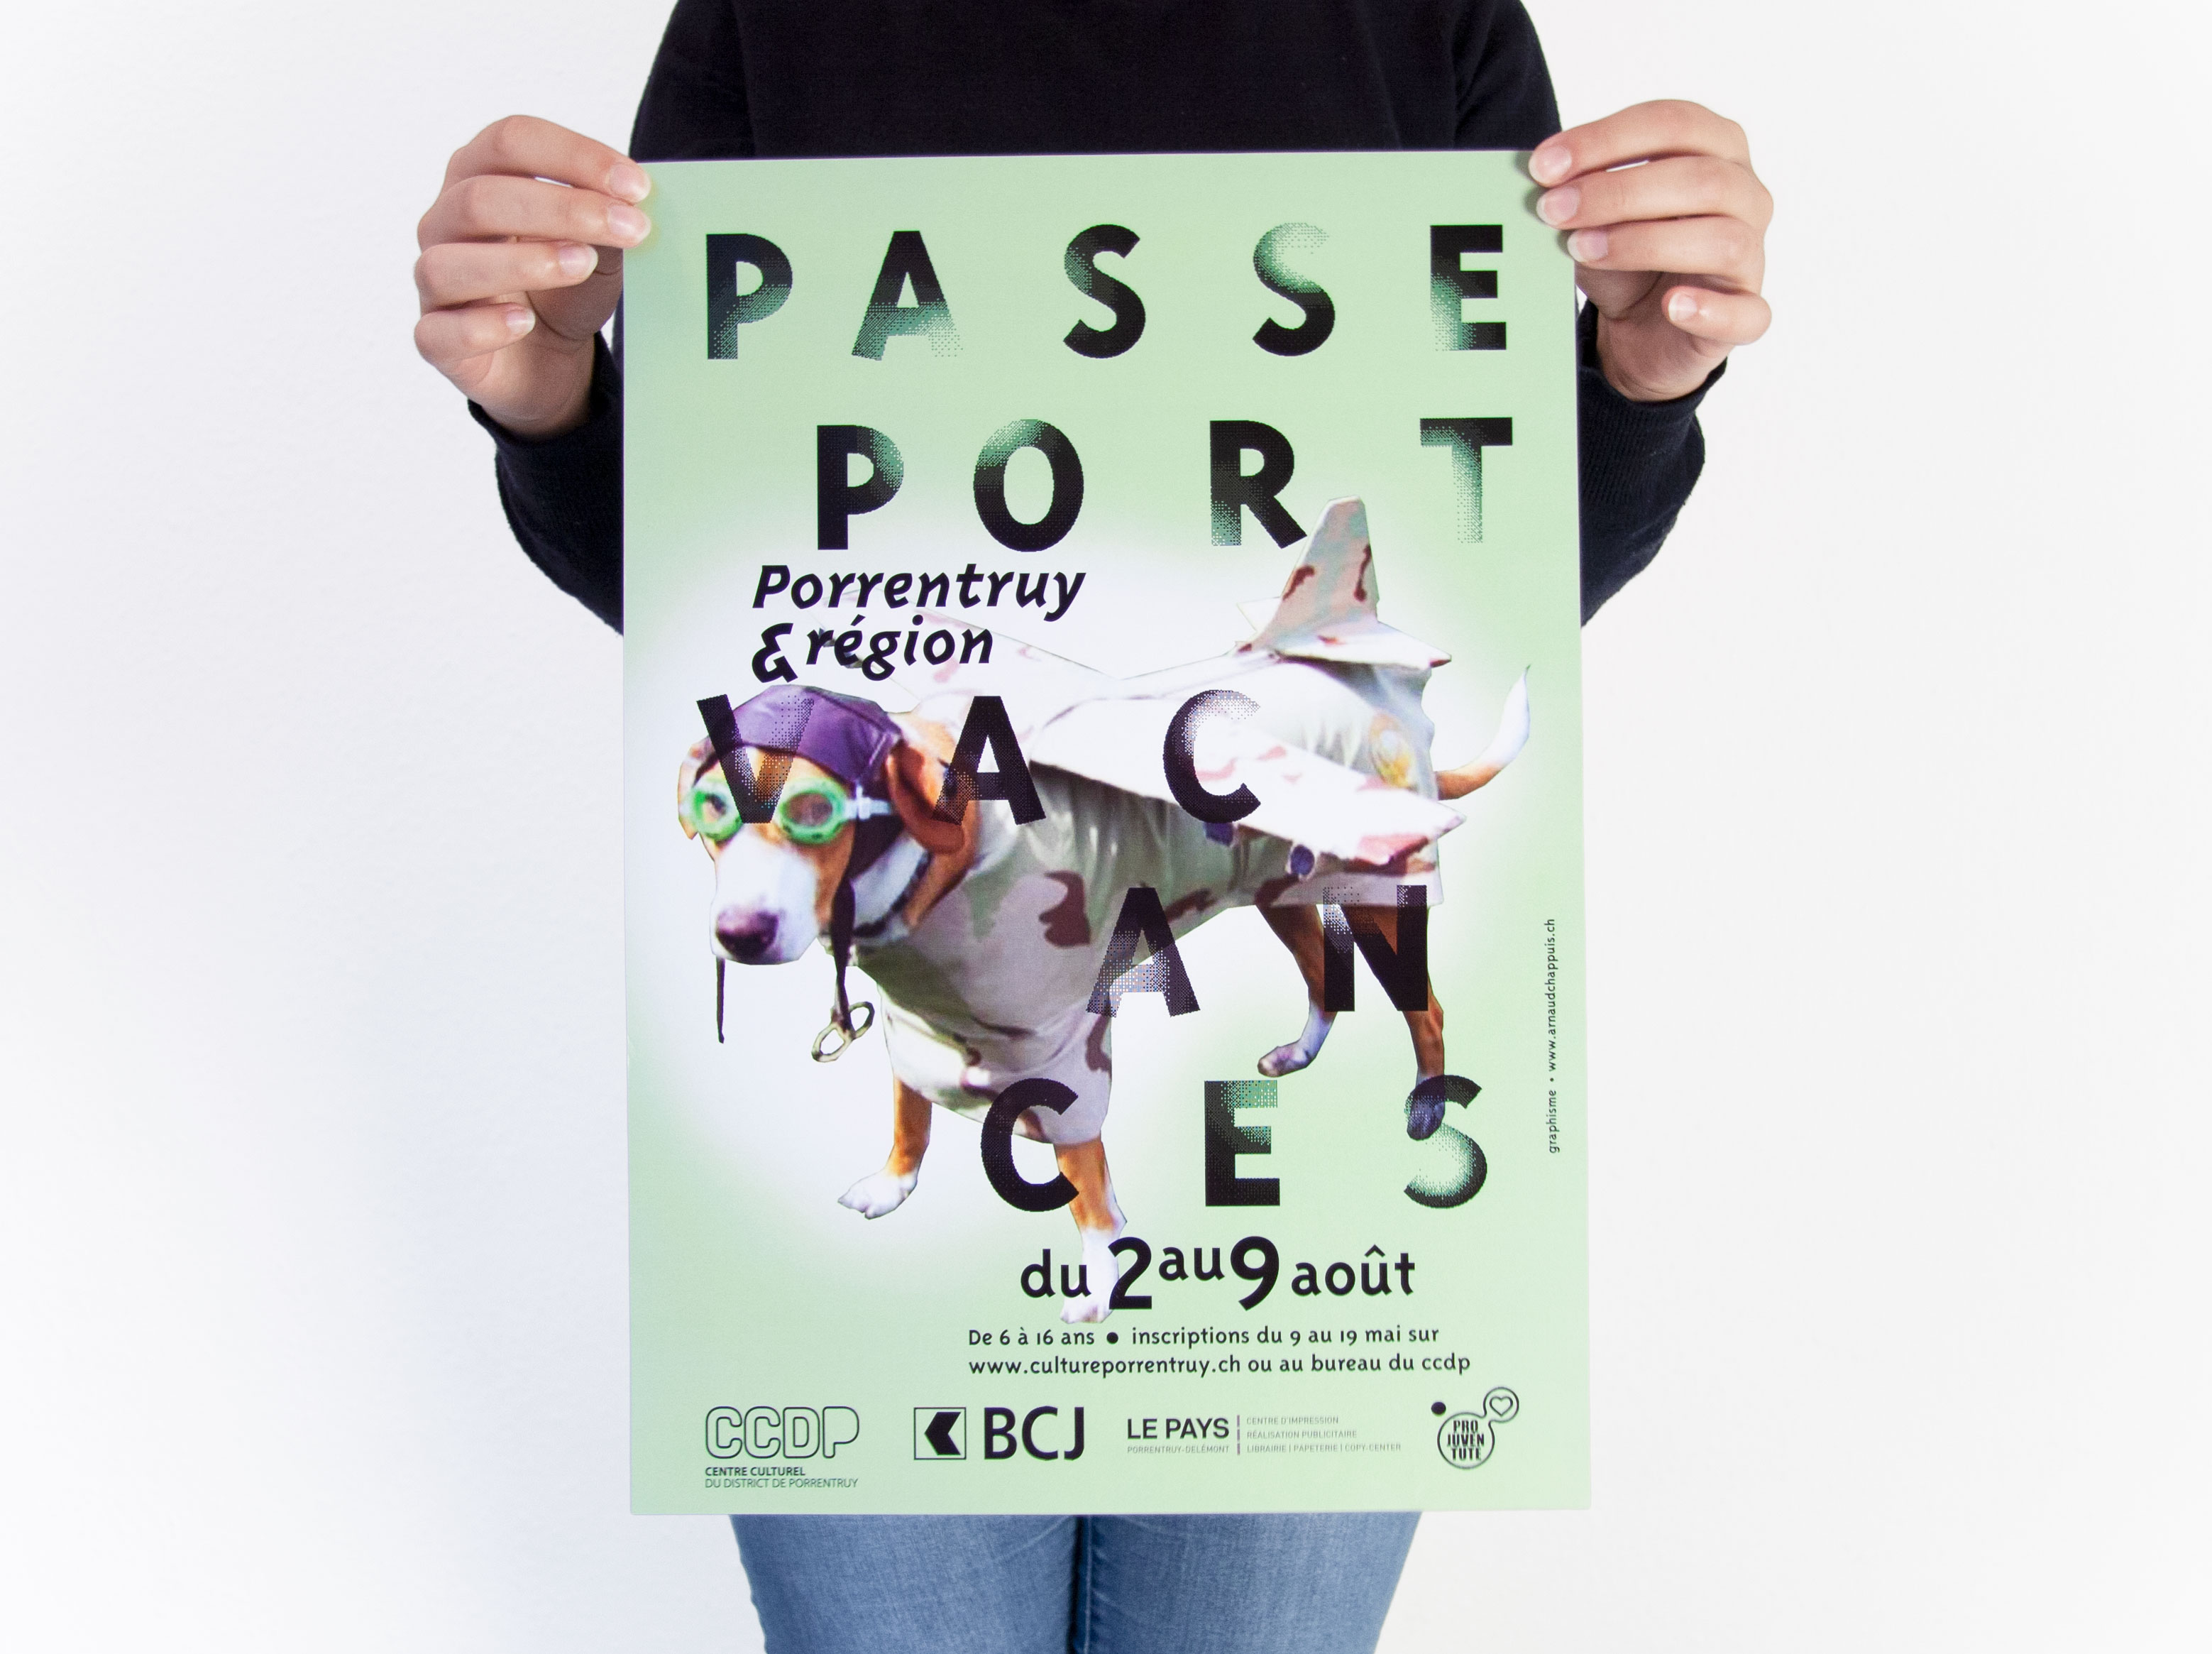 passeport-vacances Porrentruy - chiens aviateurs - centre culturel du district de Porrentruy - ccdp - graphisme arnaud chappuis